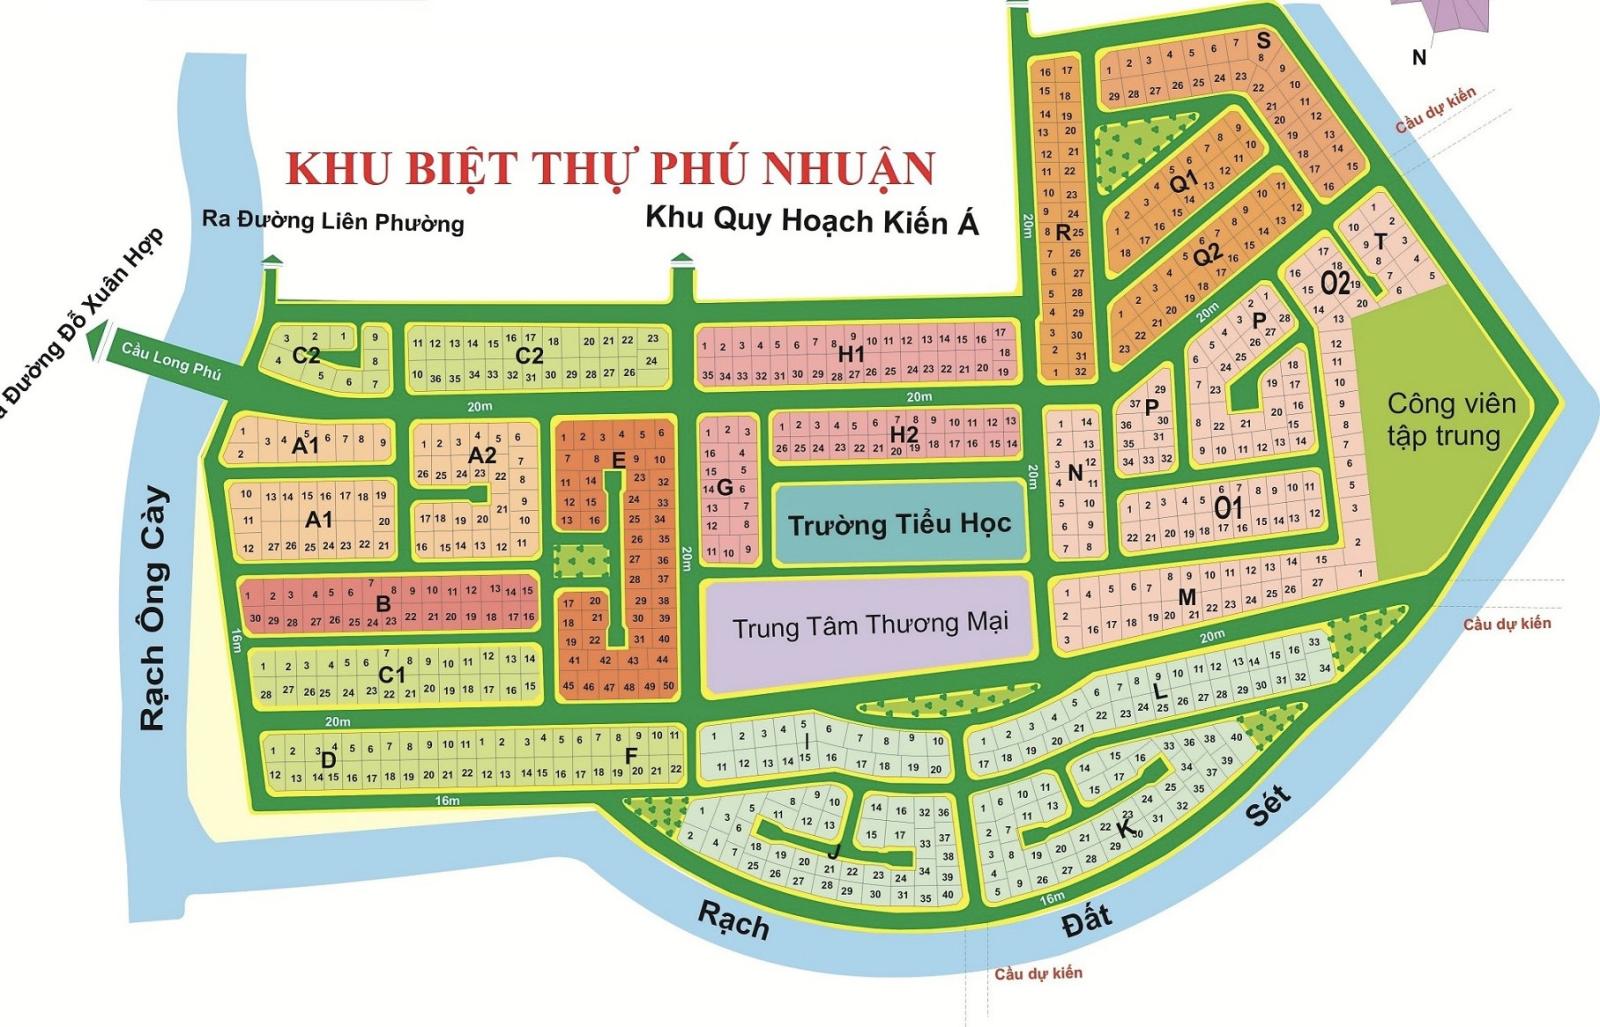 Dự án KDC Phú Nhuận - Phước Long B, Quận 9 Tp. Thủ Đức. Sổ đỏ cá nhân.